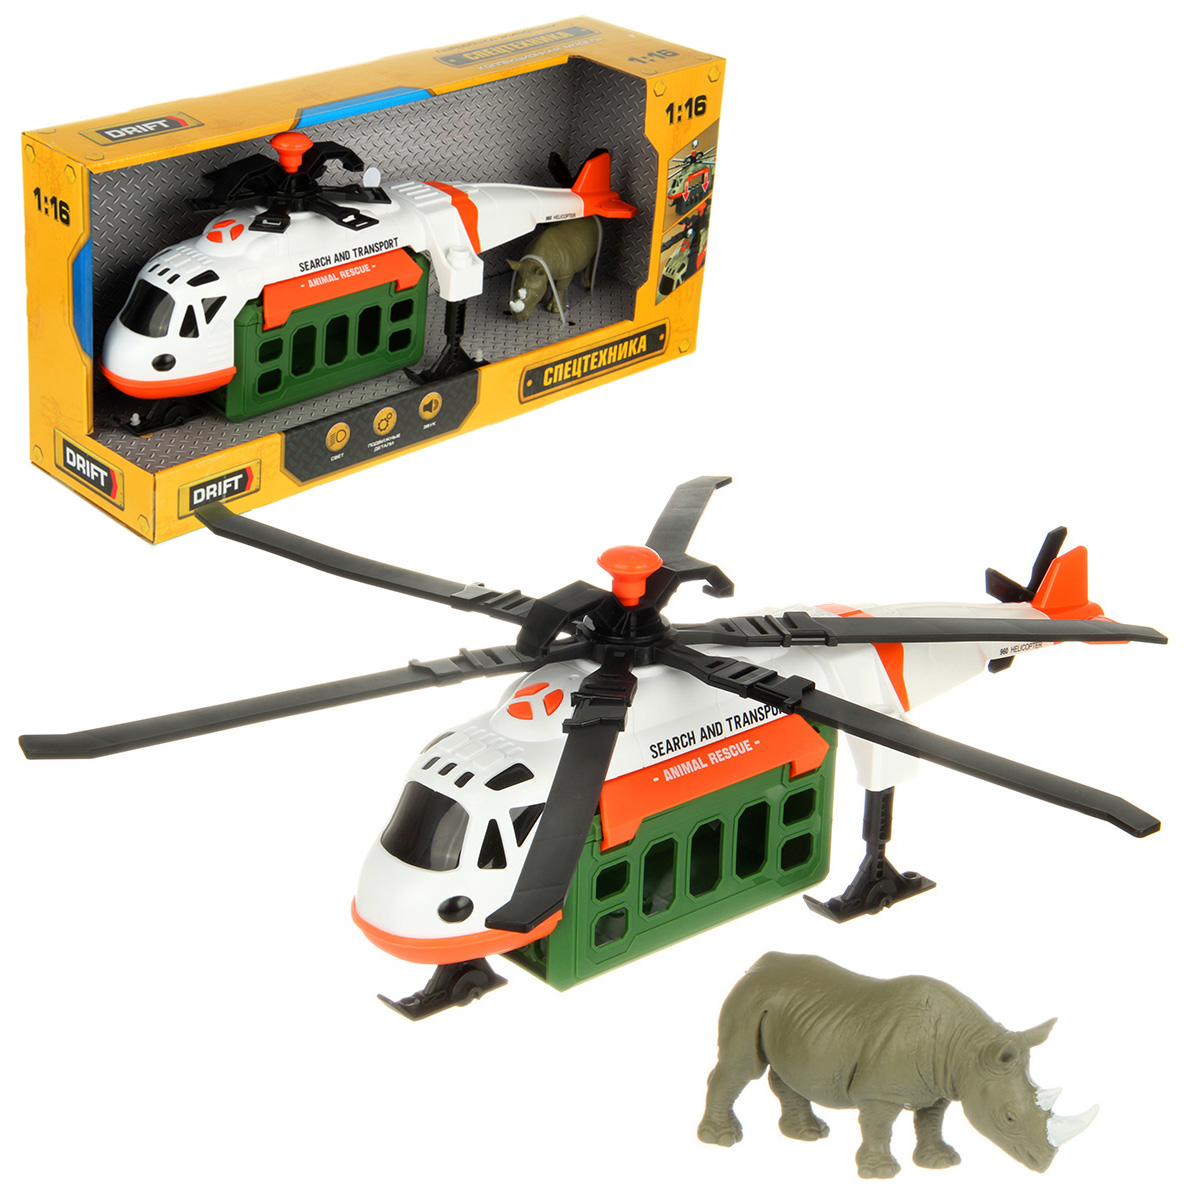 Вертолет игрушечный Drift Перевозка животных 1:16 белый 130979 держатели верхних и нижних лопастей для вертолета syma s107g